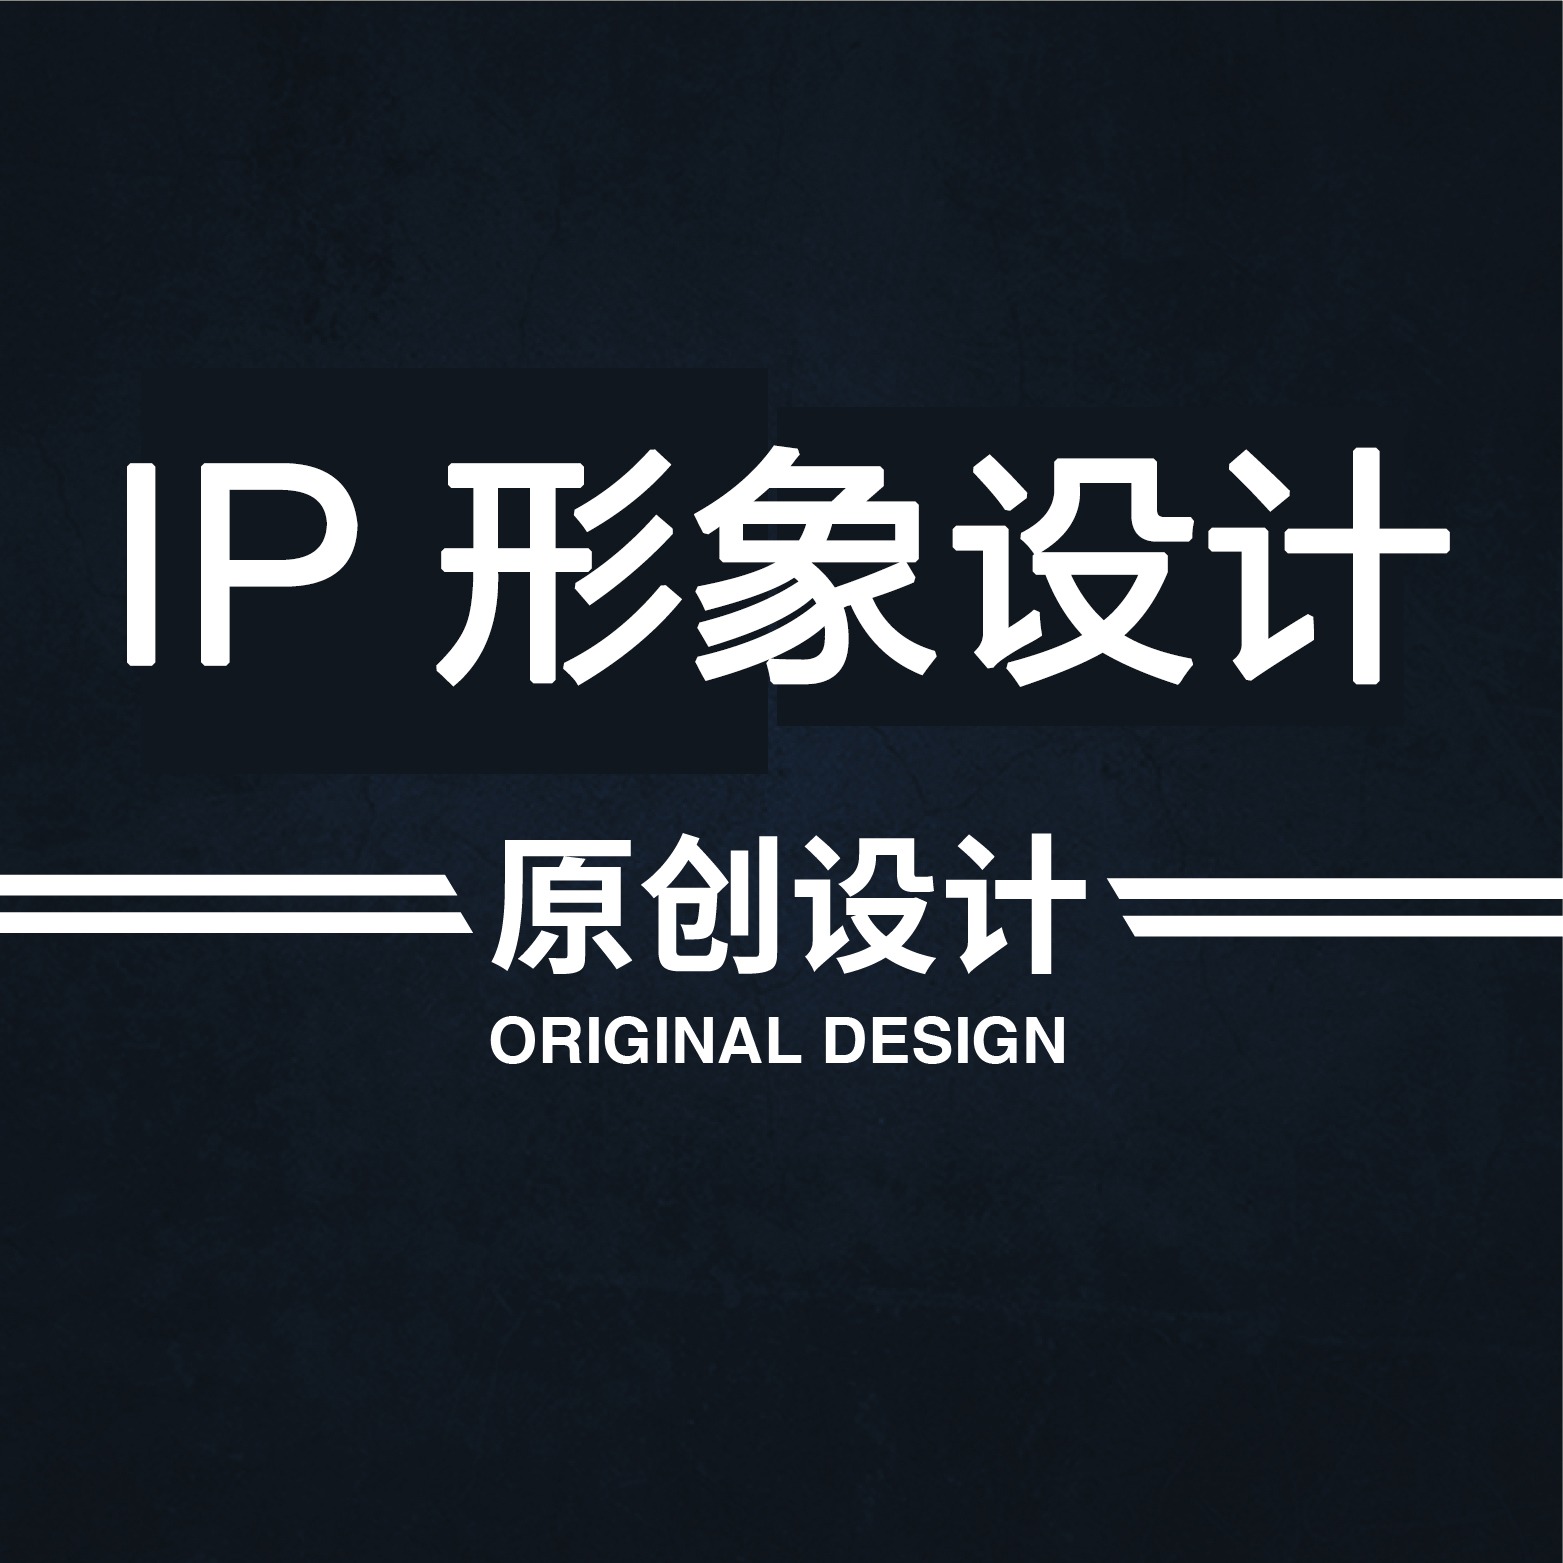 企业IP形象设计卡通logo设计吉祥物设计及建模